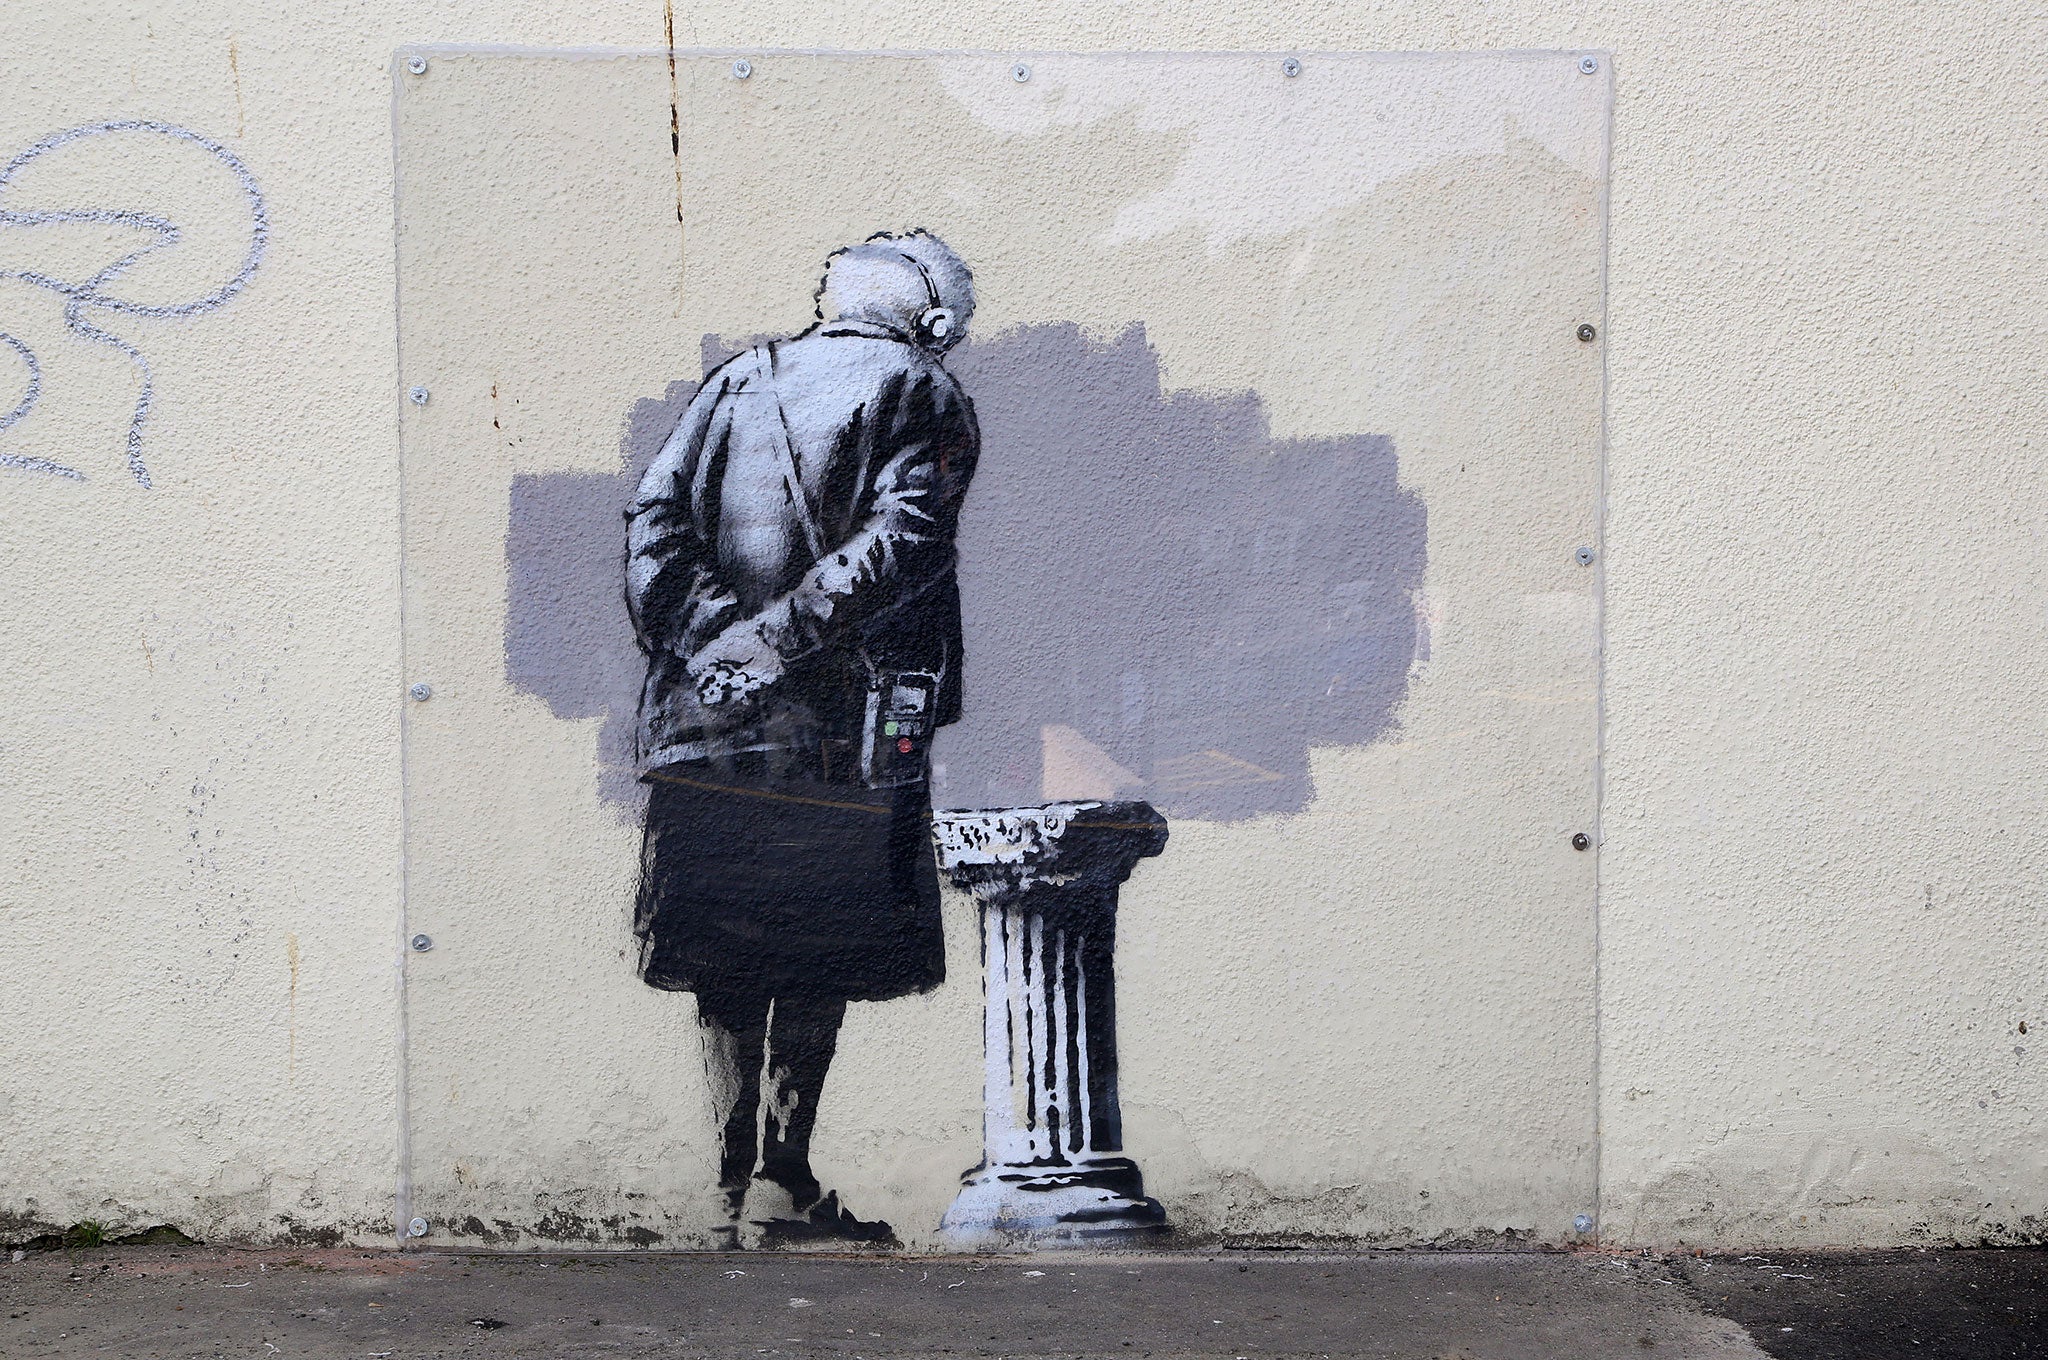 Banksy art in Folkestone vandalised by graffiti | News 